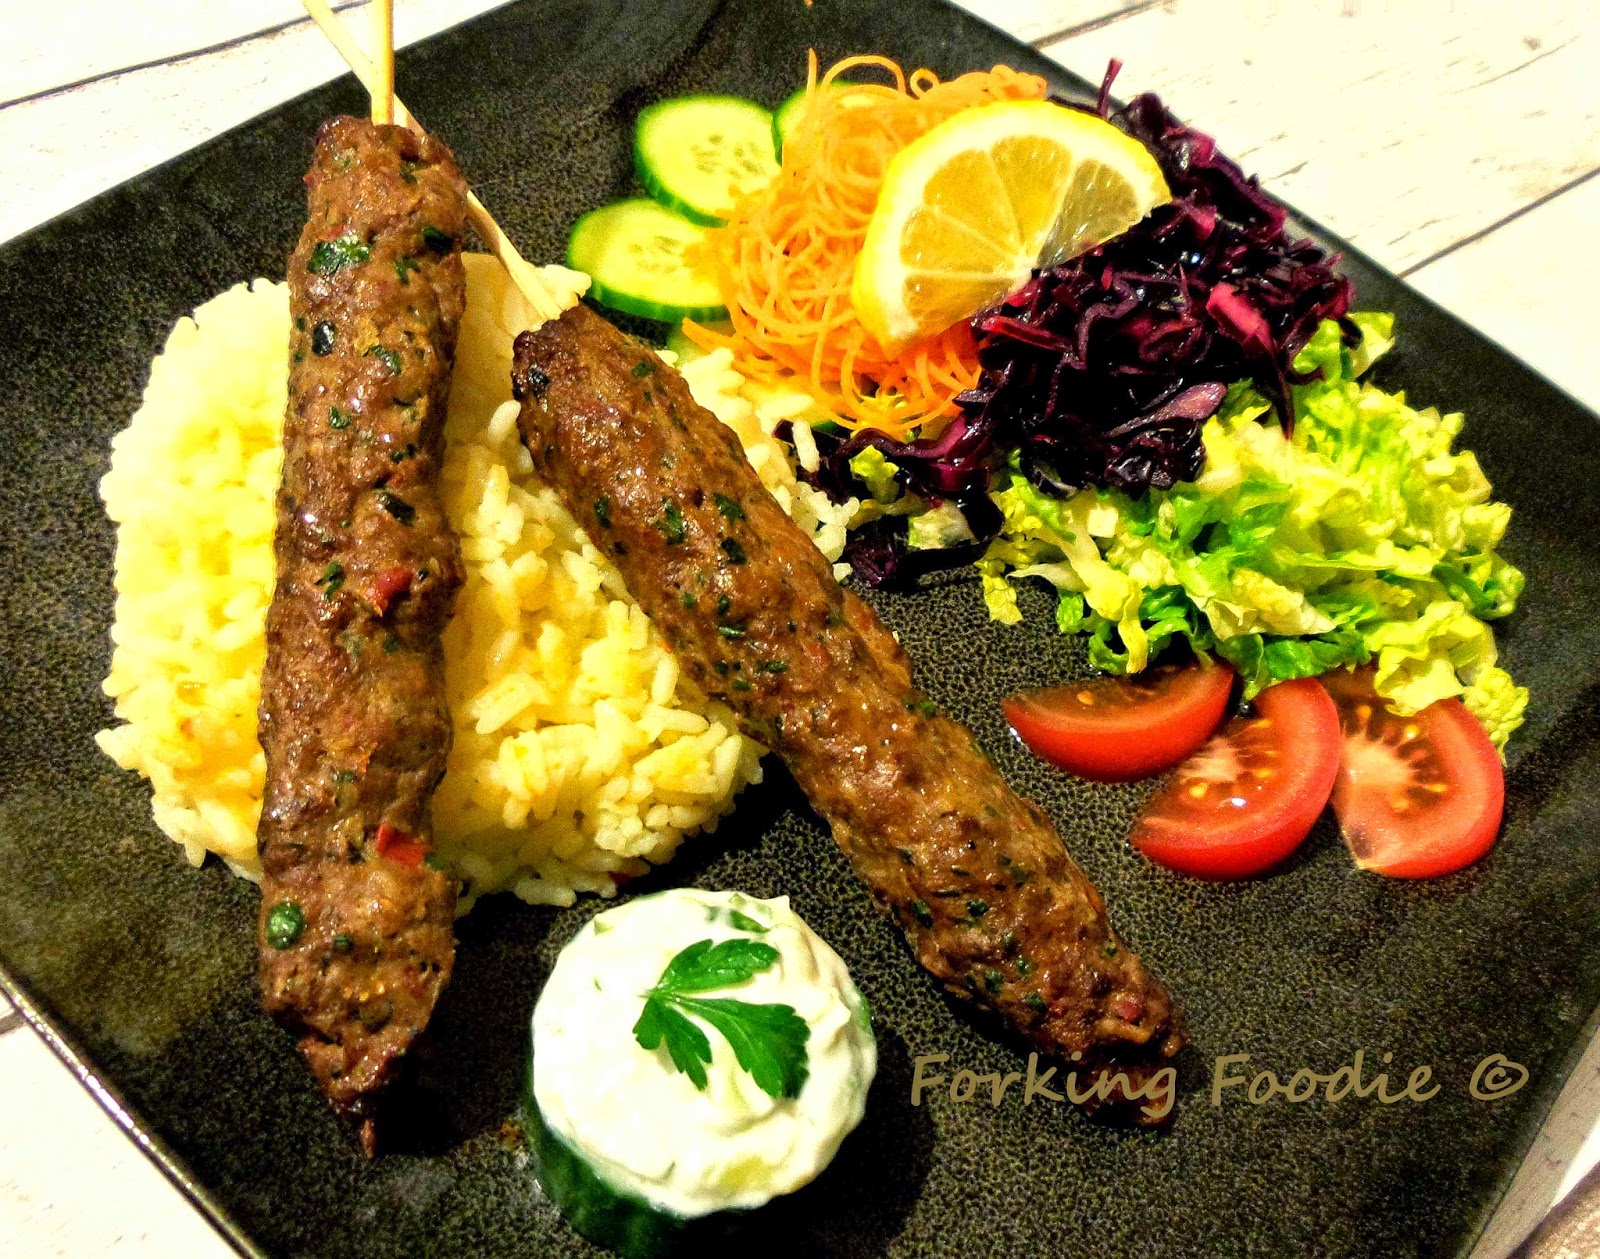 Forking Foodie: Turkish (Lamb) Adana Kebabs / Kofta Kebabs - the Really ...